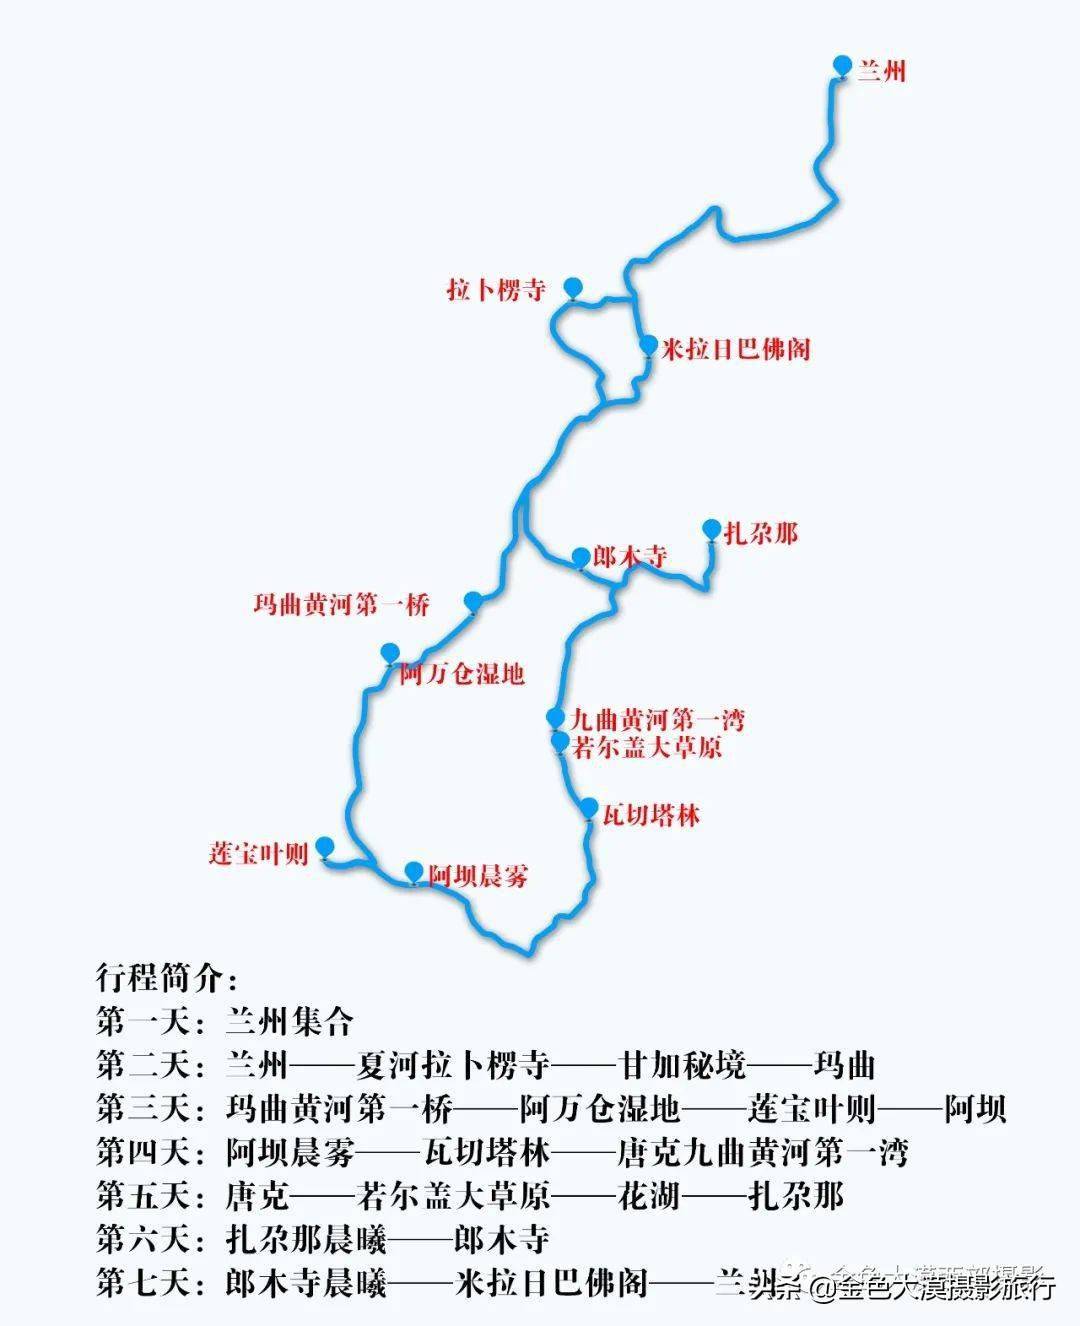 甘肃白龙江地图图片